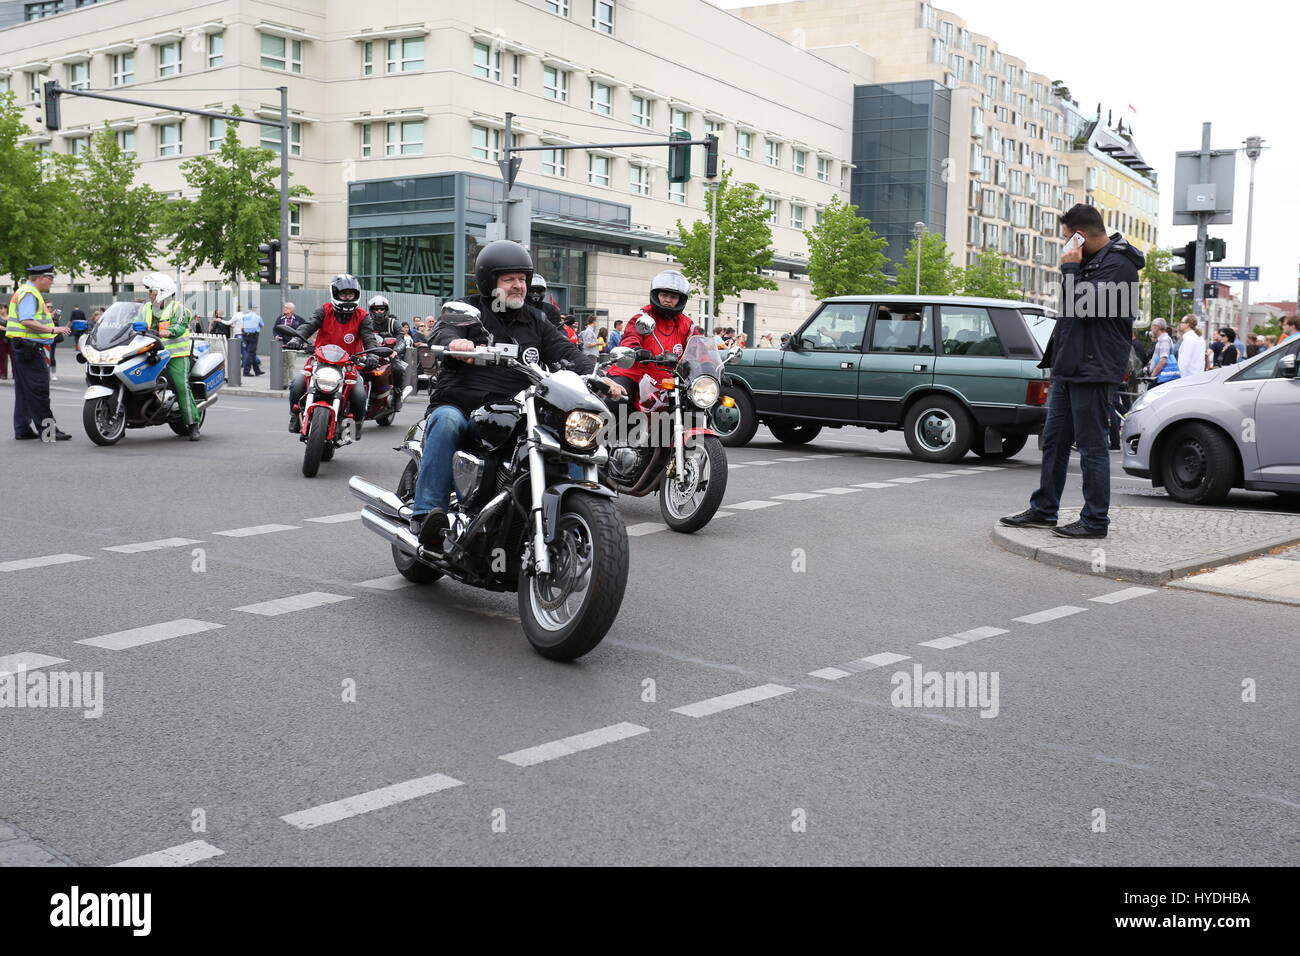 Berlin, Allemagne, Mai 9th, 2015 : Masses de bikers balade autour de la ville de Berlin pour protester contre la violence. Banque D'Images